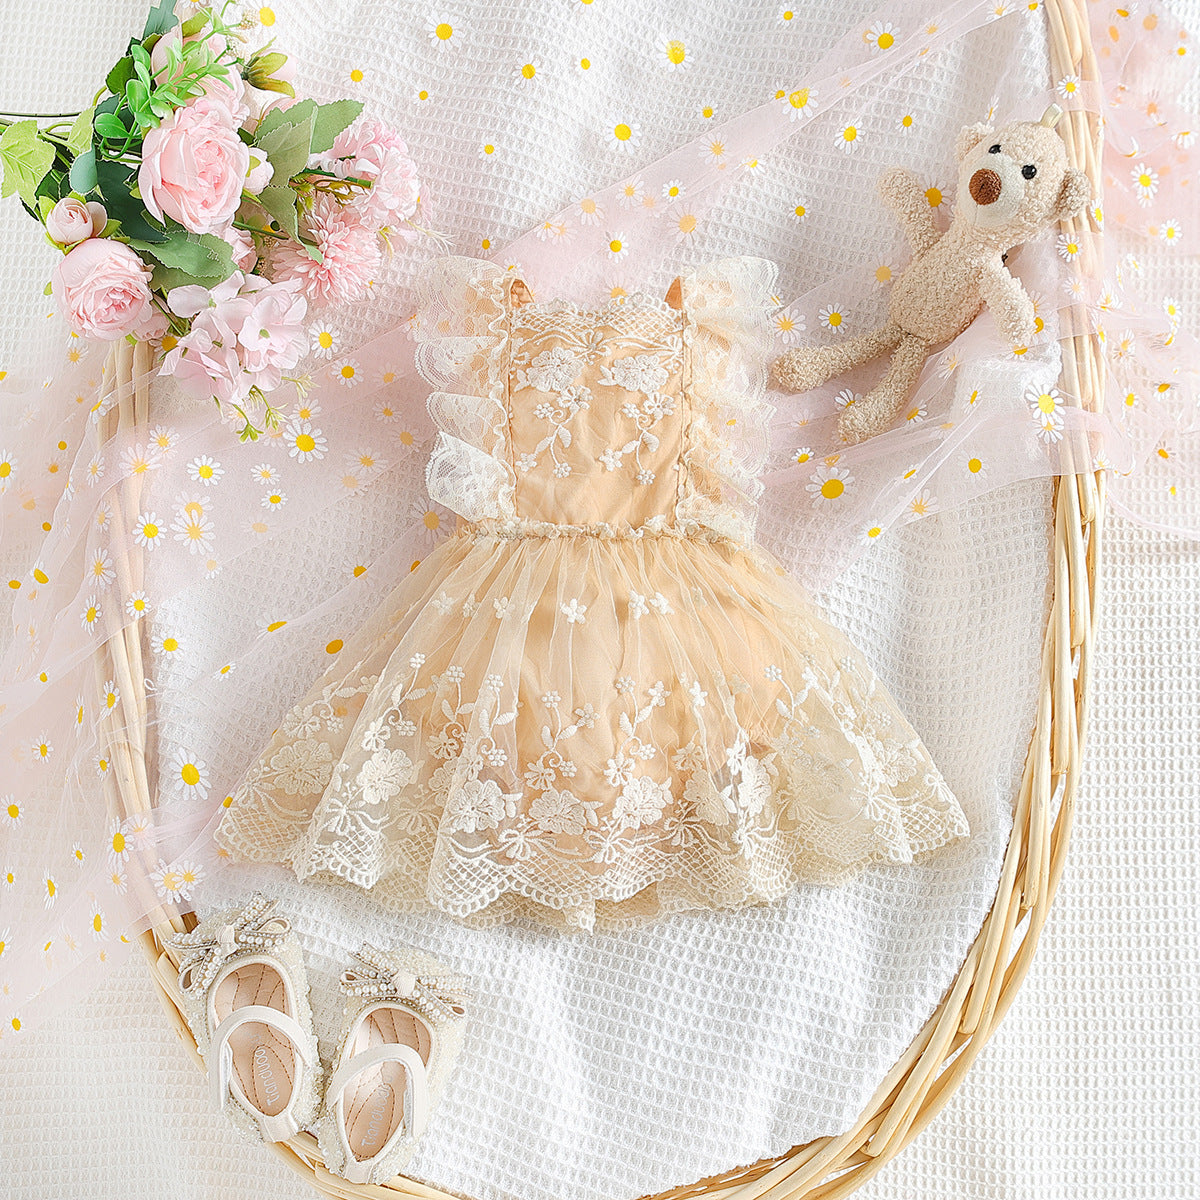 Lace Baby Girl Romper Dress - Beige